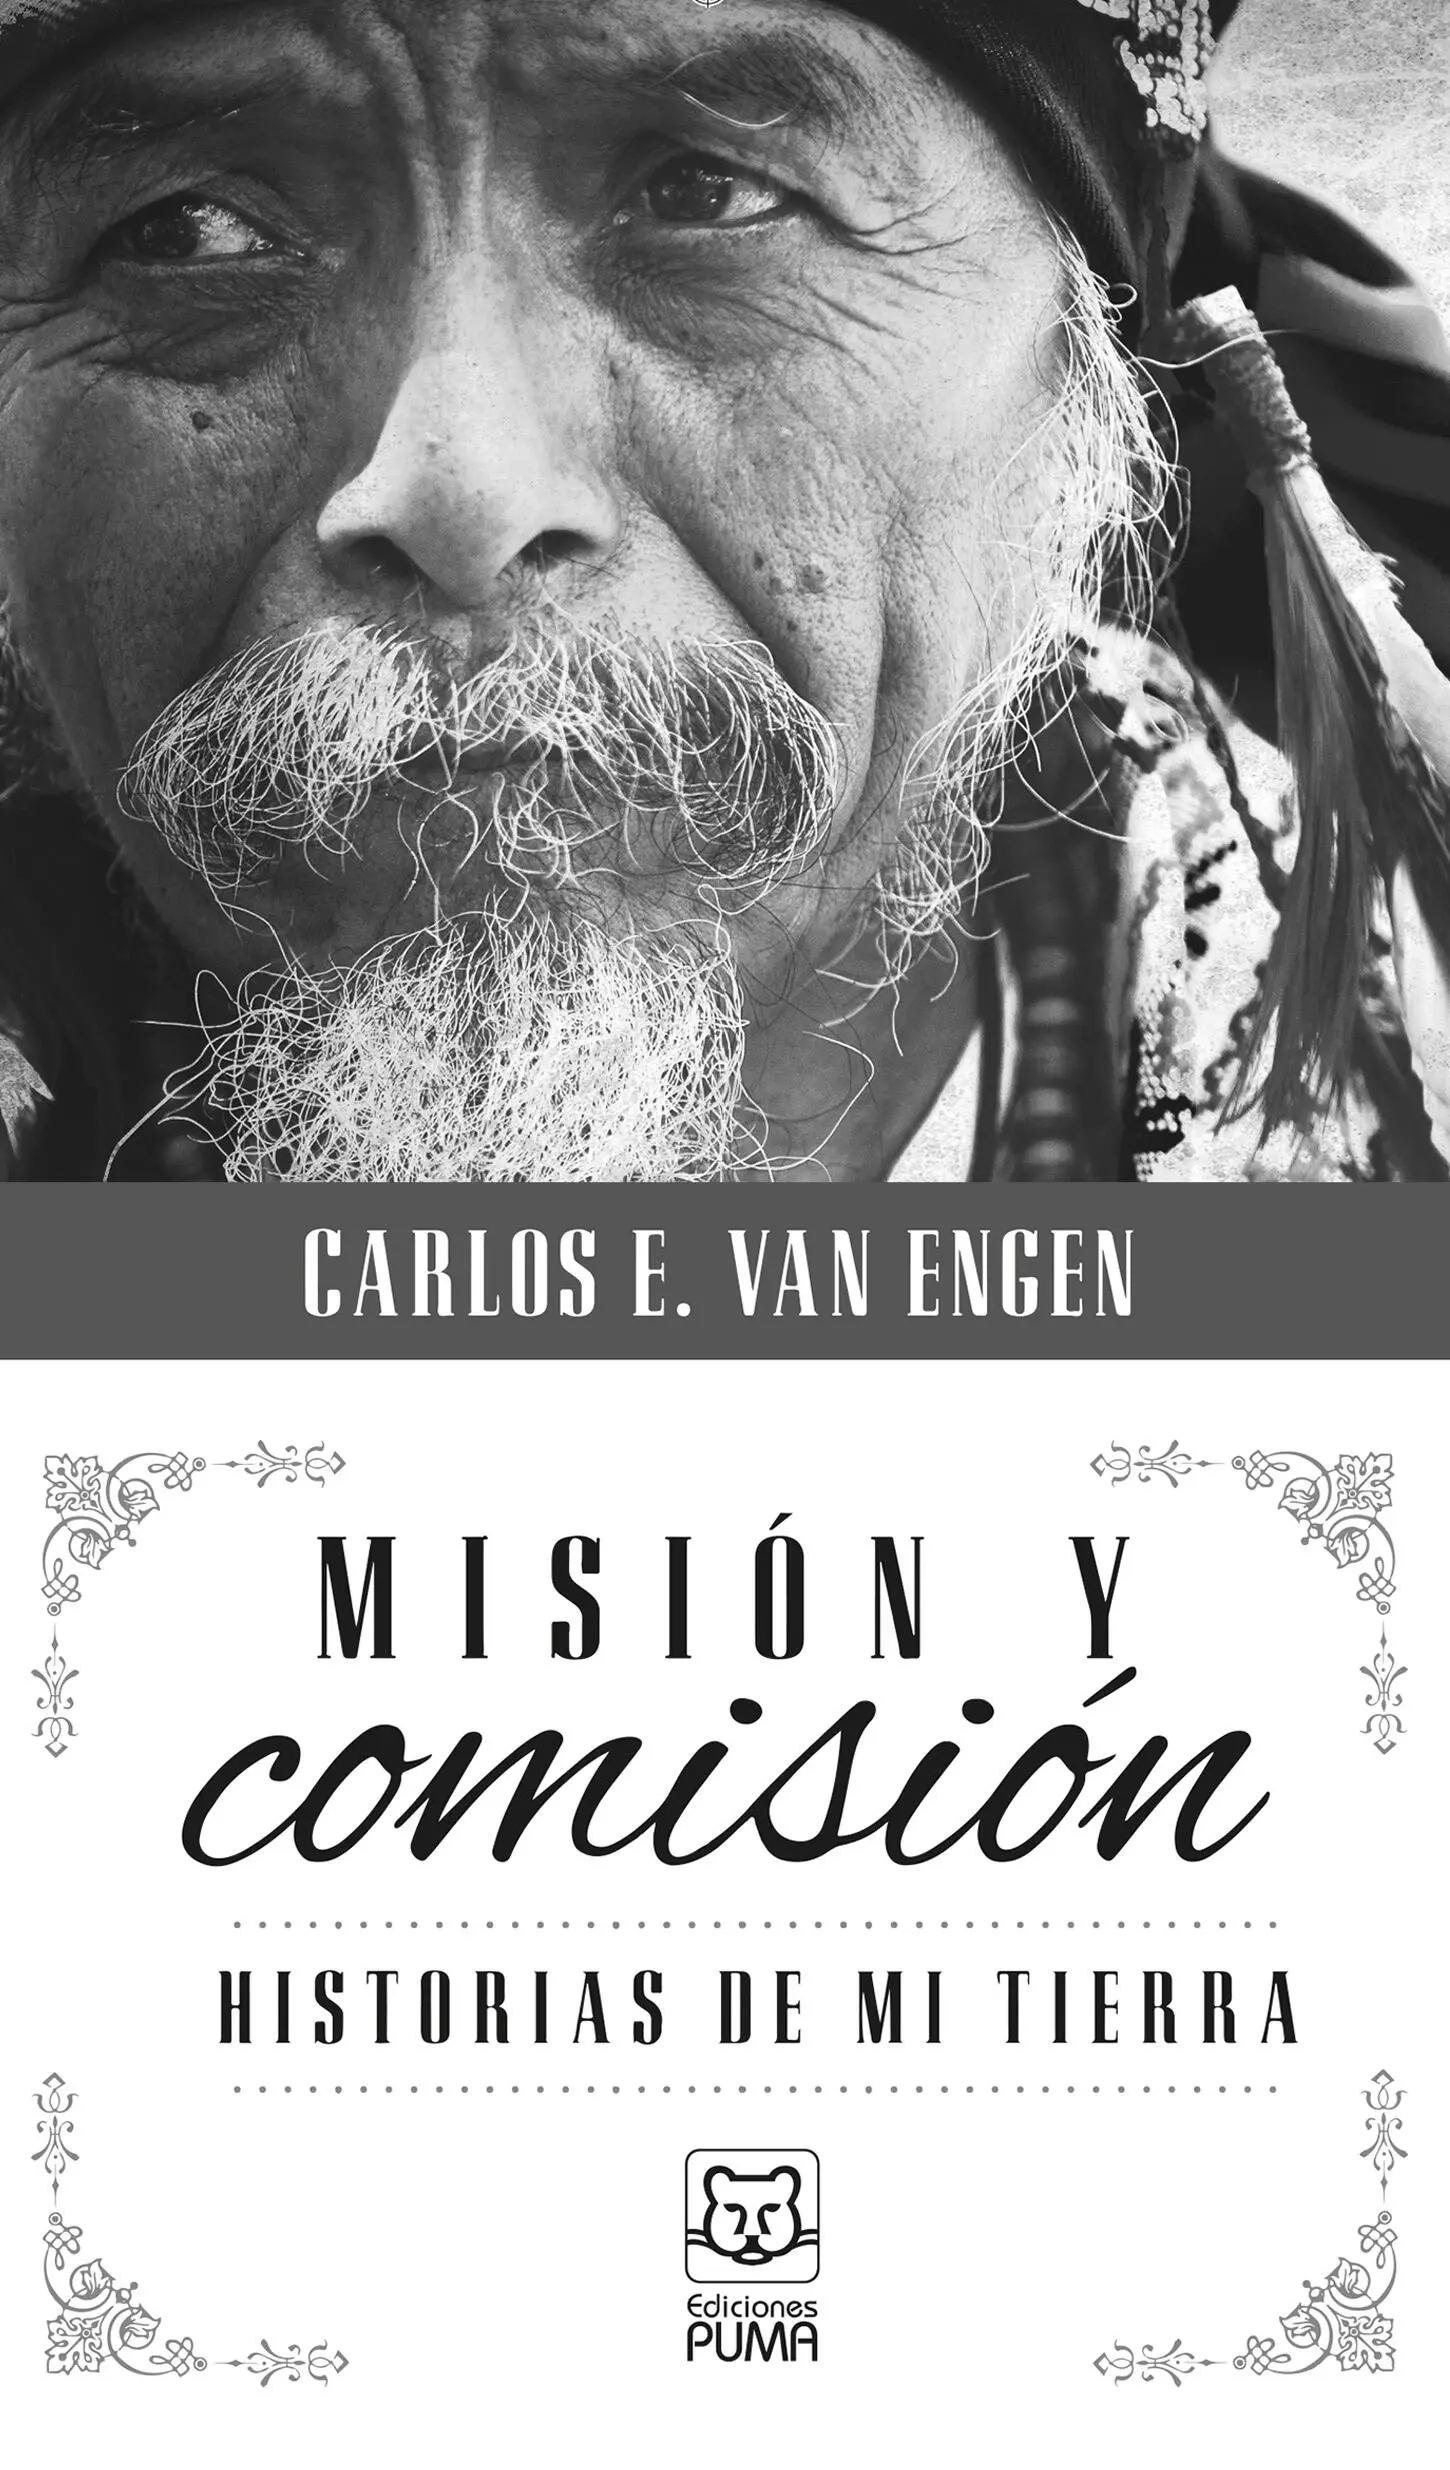 Misión y comisión Historias de mi tierra 2014 Carlos E Van Engen 2014 - фото 2